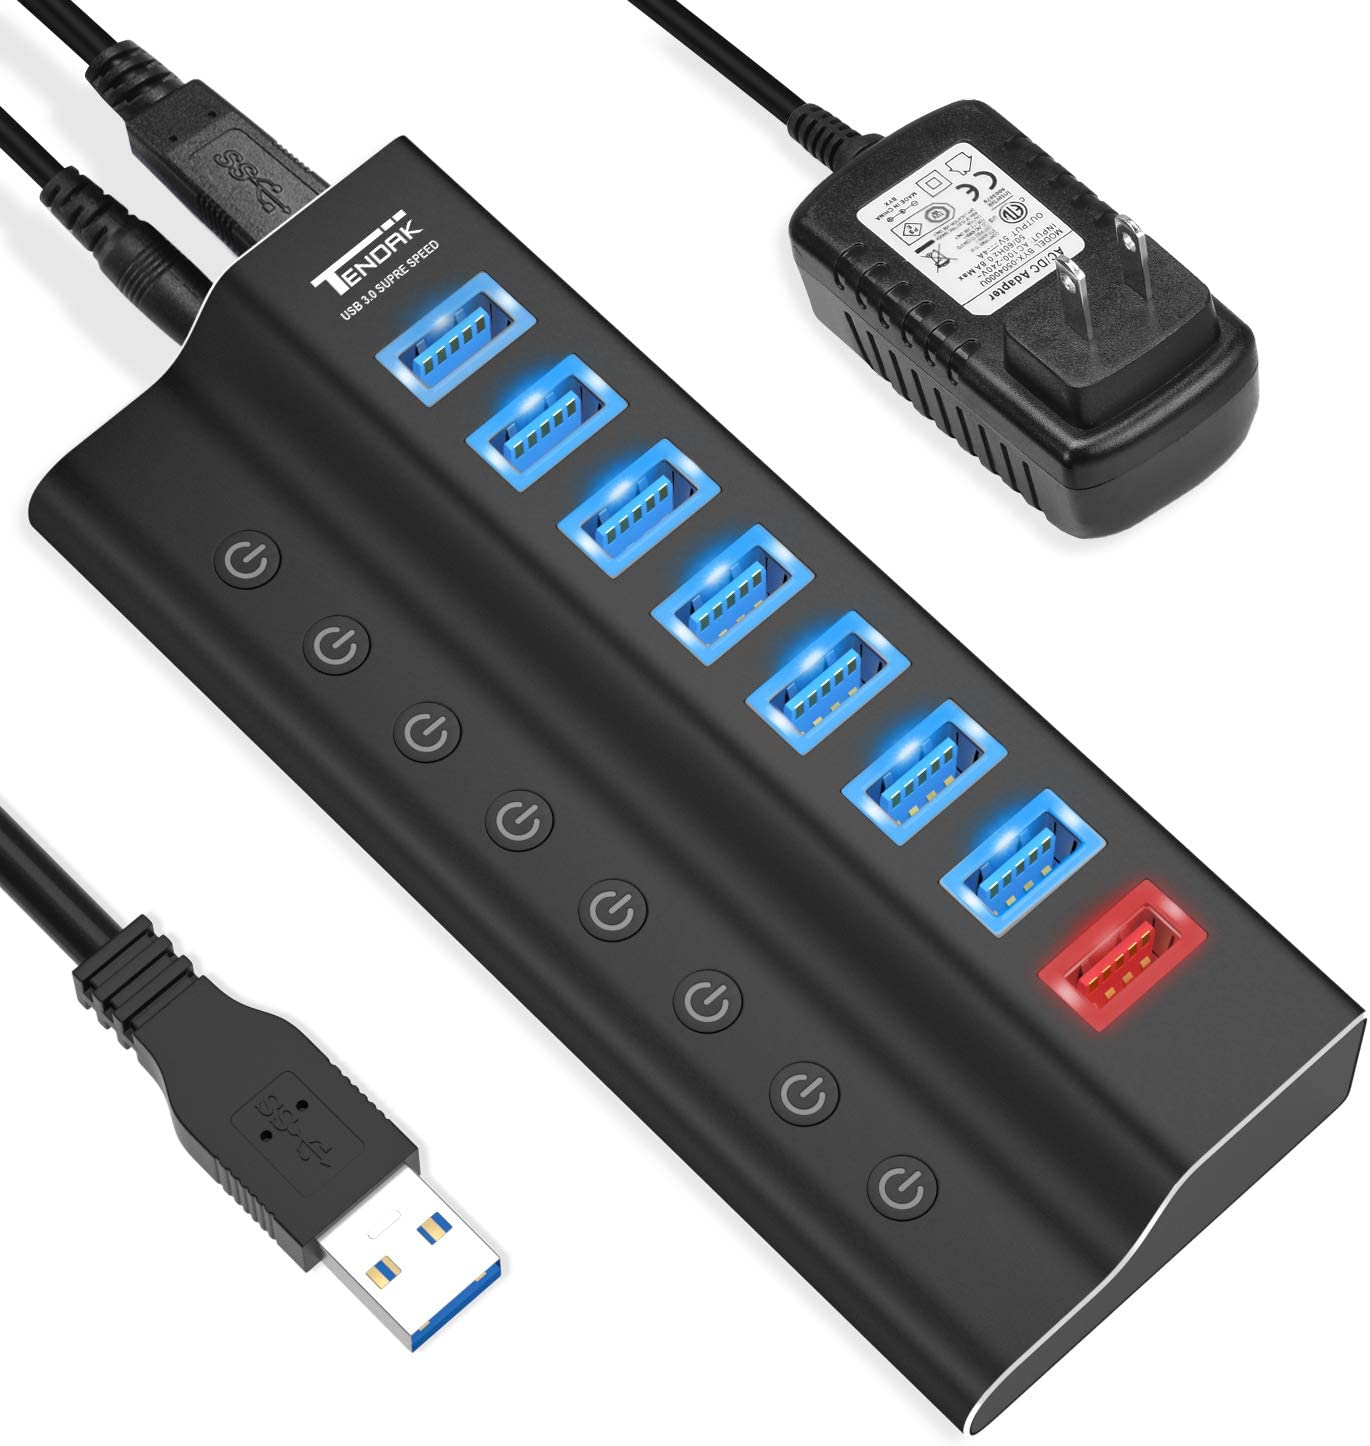 Hub USB 3.0 (8 puertos USB, 7 puertos de transferencia de datos de alta velocidad + 1 puerto de carga) con interruptores de encendido/apagado individuales y adaptador de alimentación de 5 V/4 A